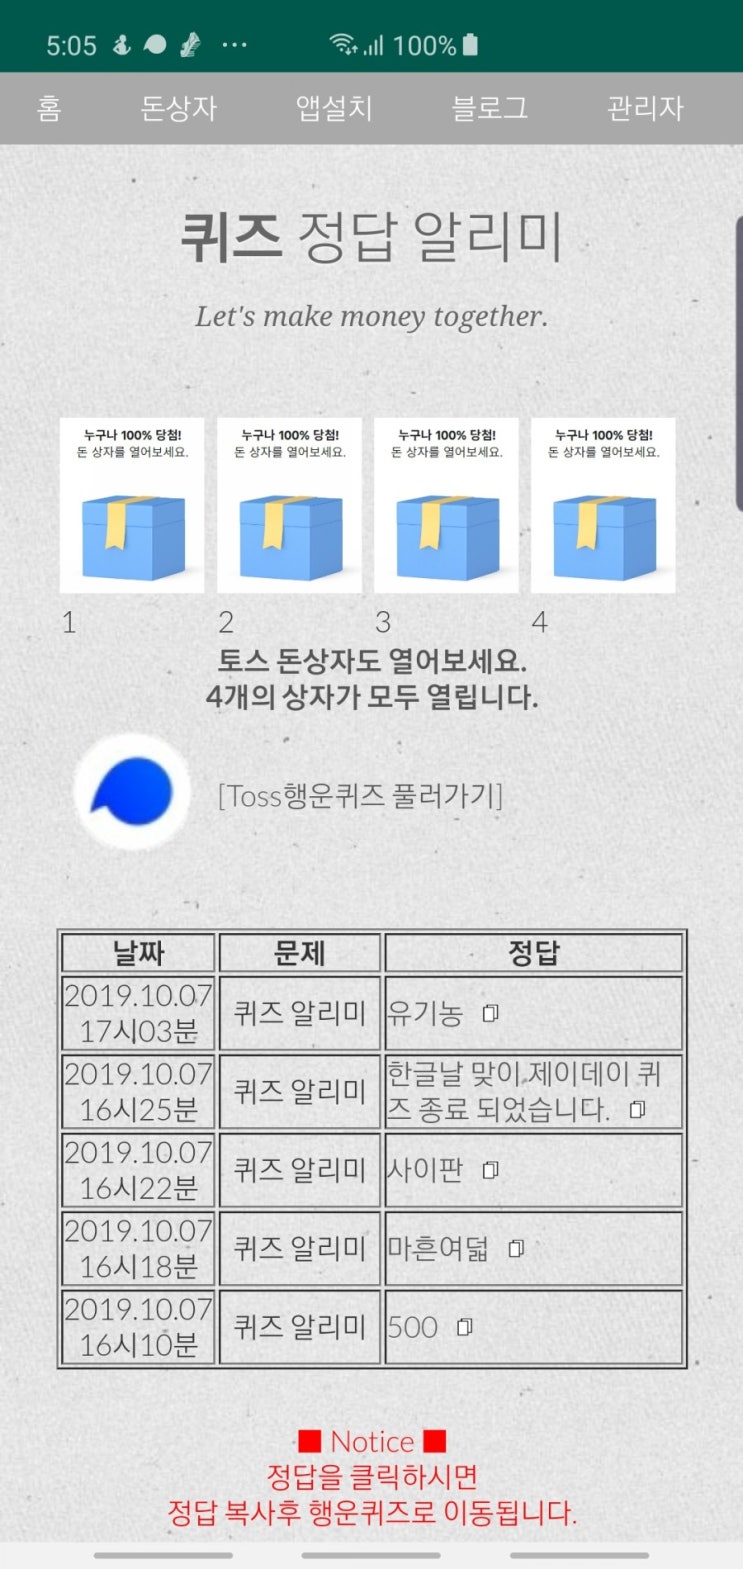 안달로우 1만명 이벤트 토스행운퀴즈 정답 공개(실시간)